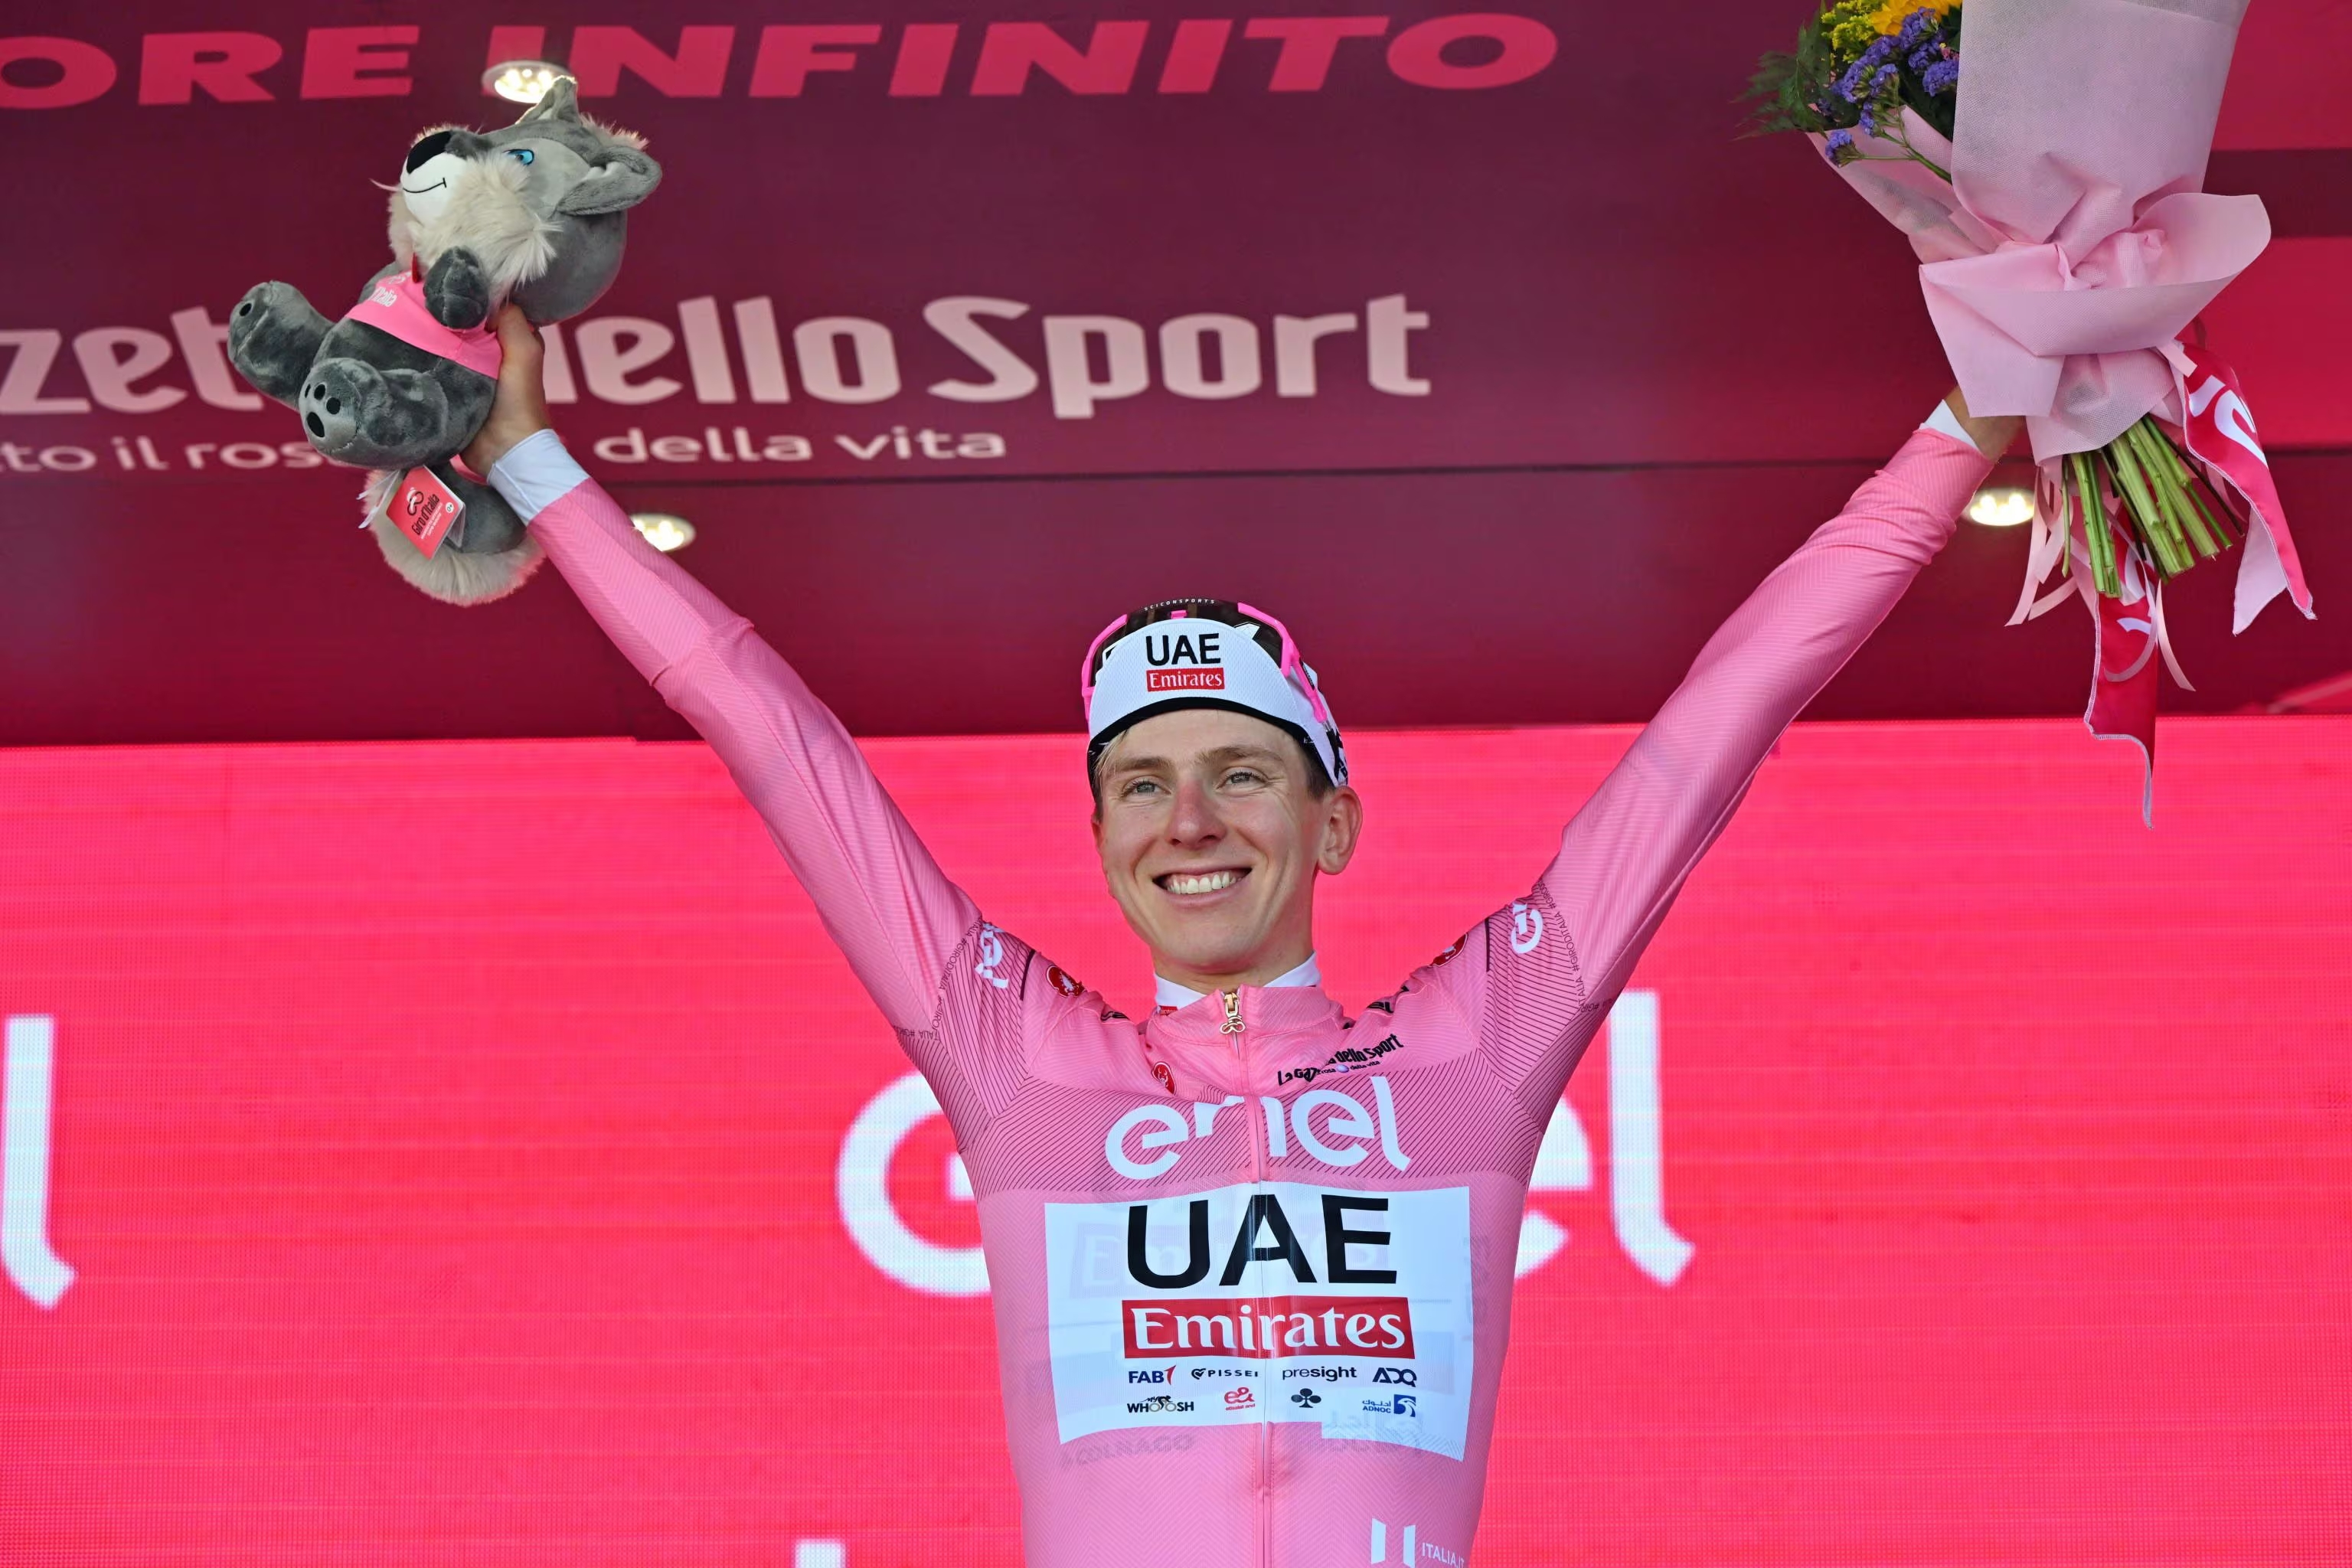 Martínez y Rubio entre los diez primeros en la clasificación del Giro tras la etapa 17